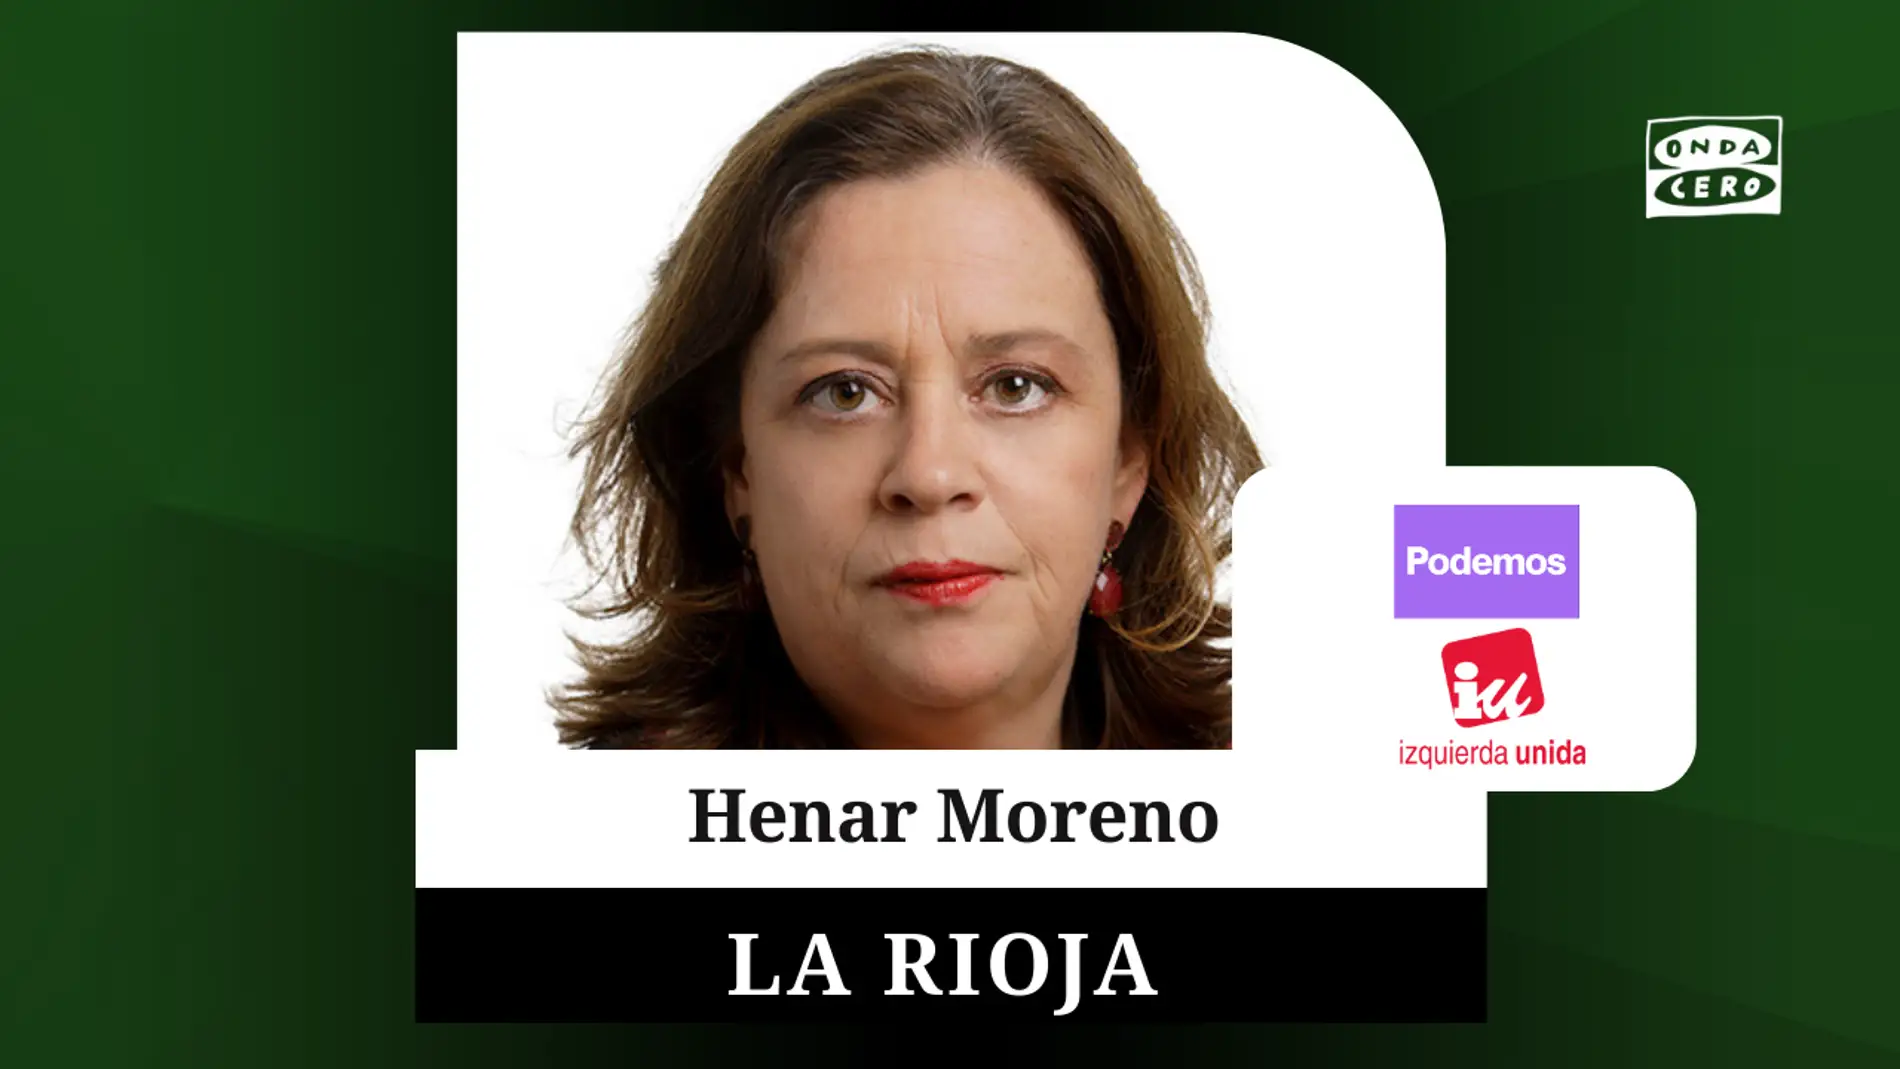 La abogada Henar Moreno confía en volver a sr la llave de un gobierno de izquierdas en La Rioja